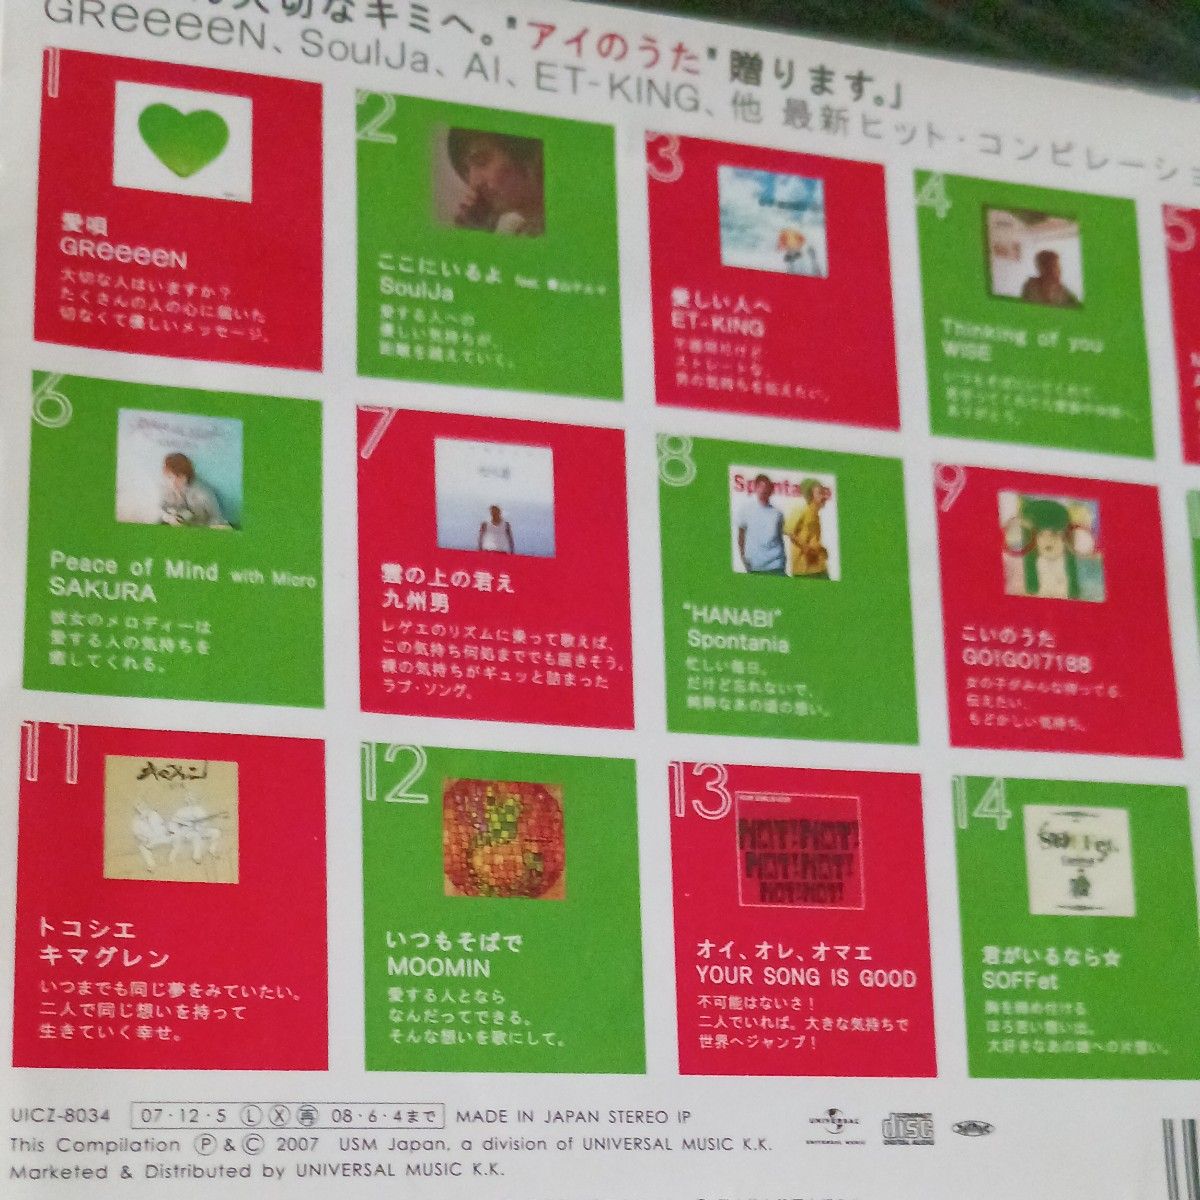 オムニバス ＧＲｅｅｅｅＮ 愛唄 青山テルマ ET-King ほか／君を想うアイのうたコンピレーションアルバム 全15曲◆美品